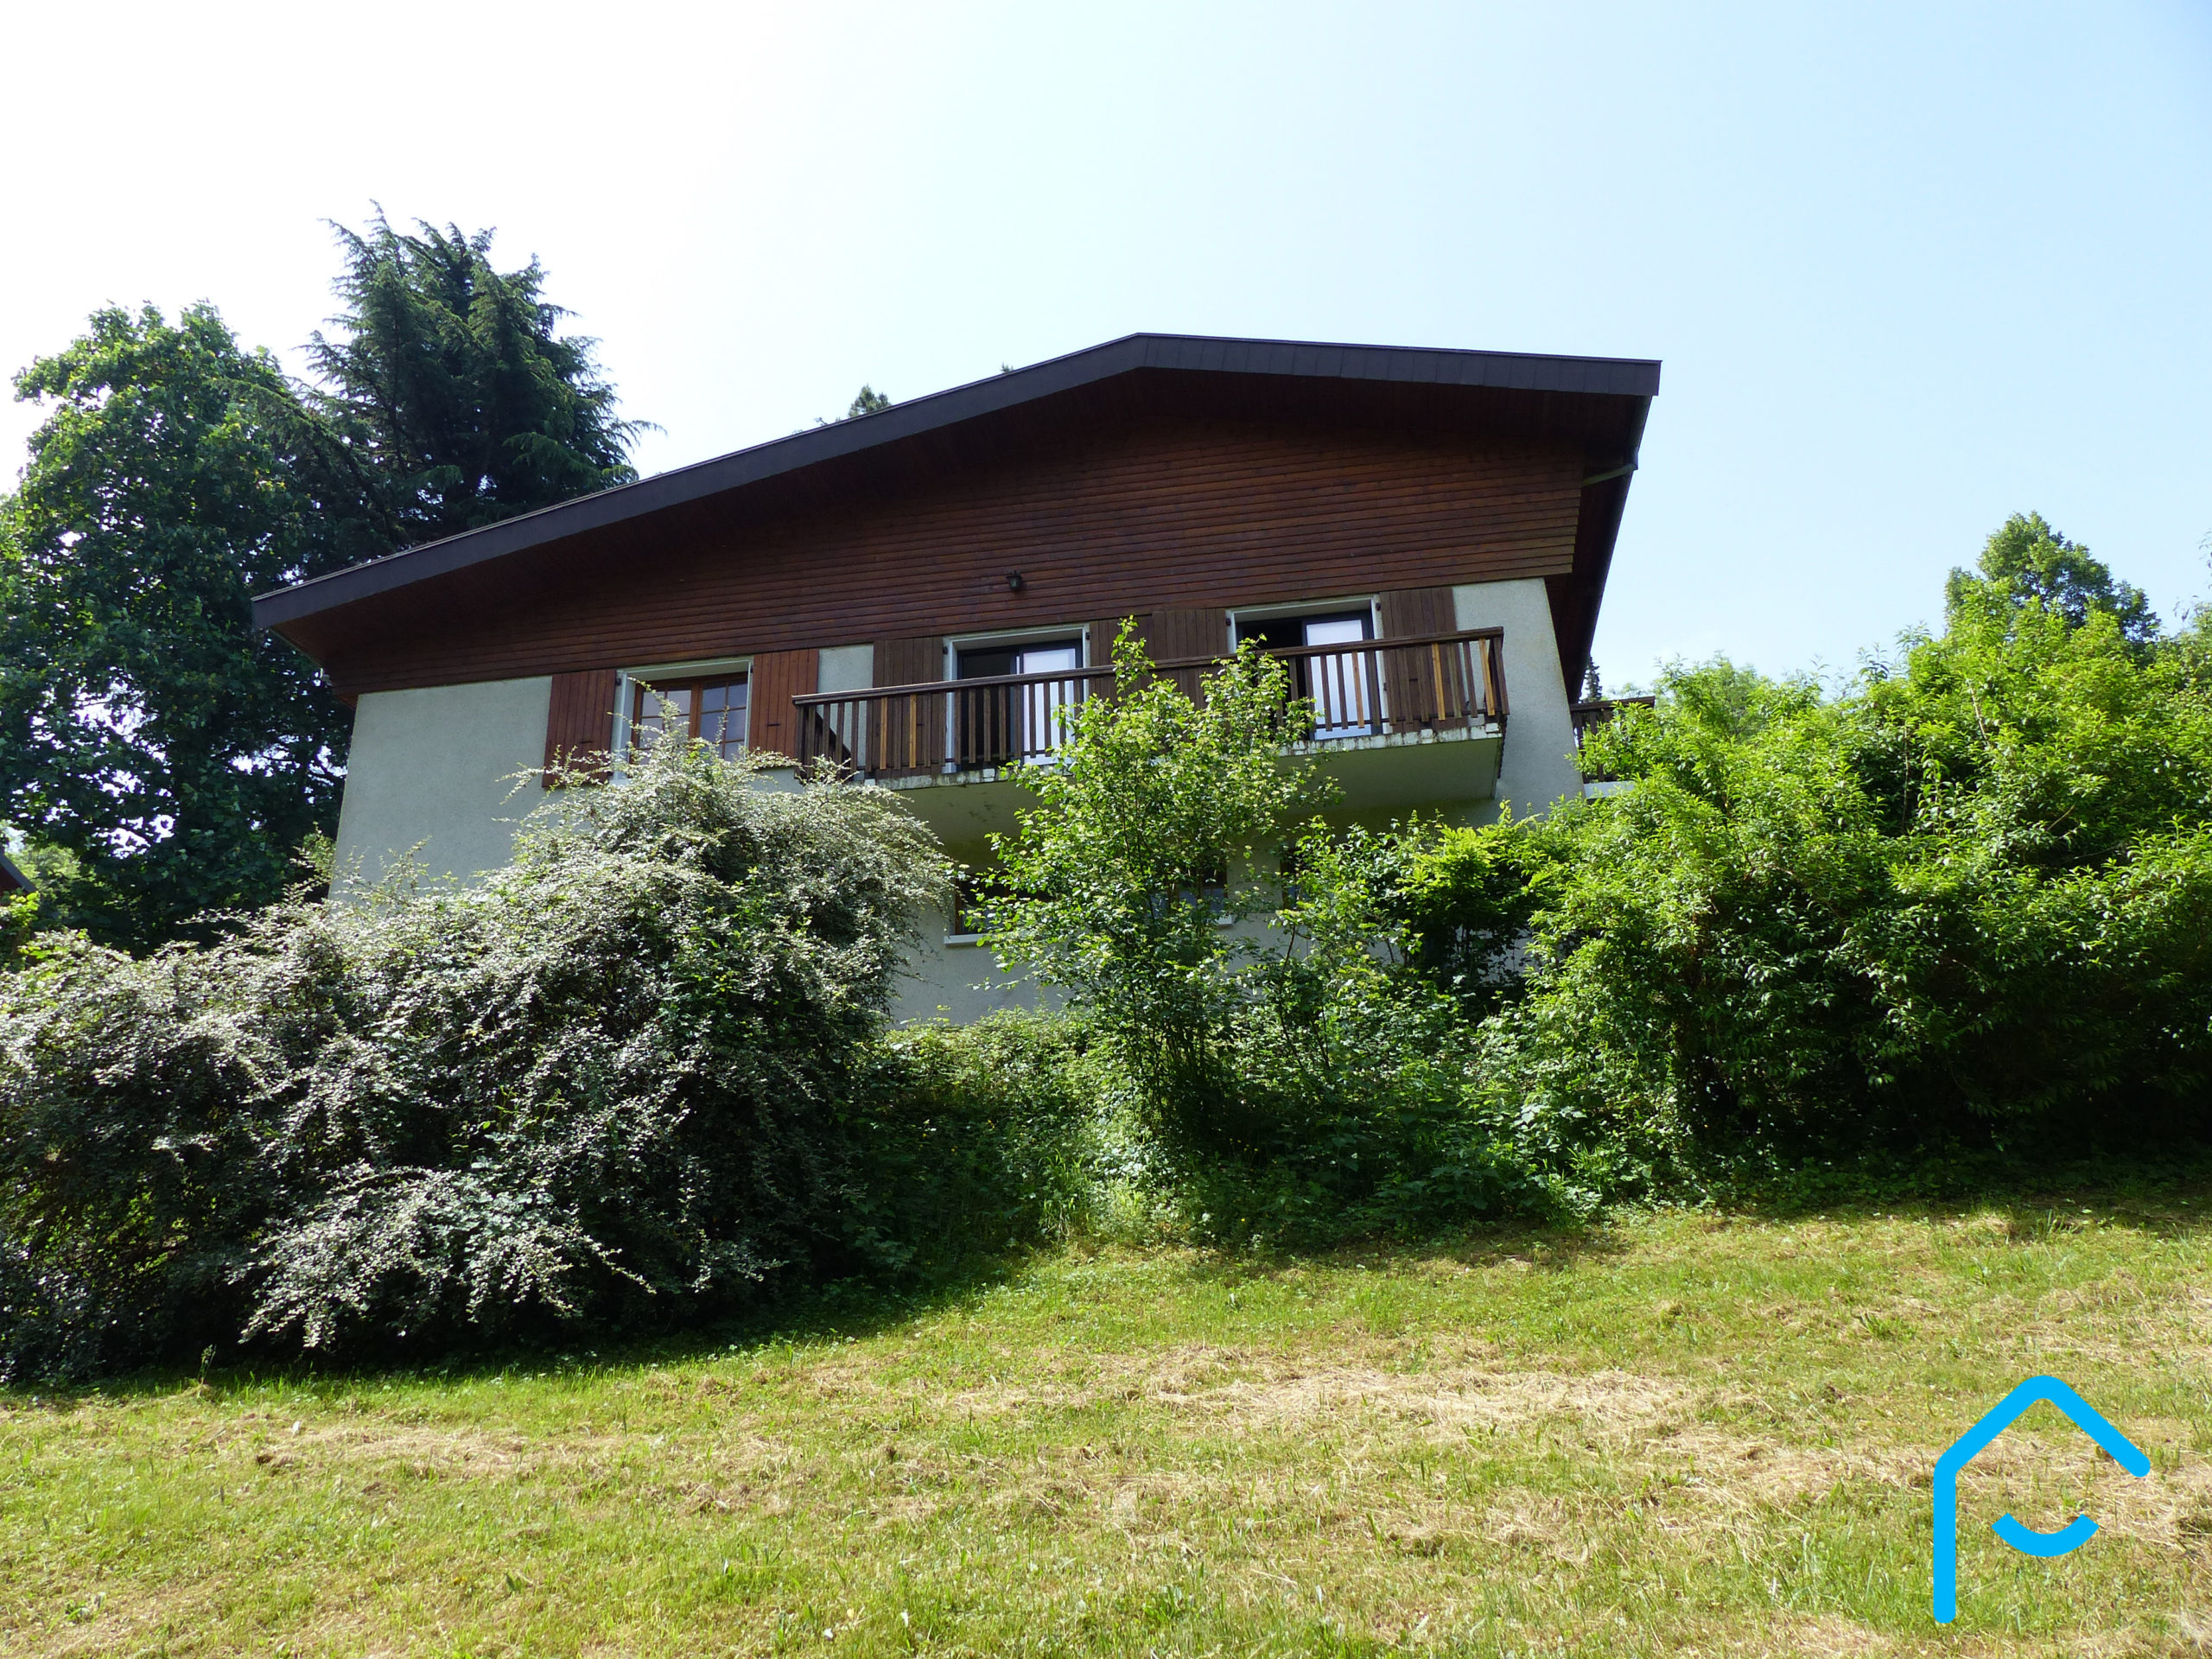 A vendre Savoie Chambéry Jacob-Bellecombette maison individuelle terraini 5 chambres quartier résidentiel rare à la vente vue 10